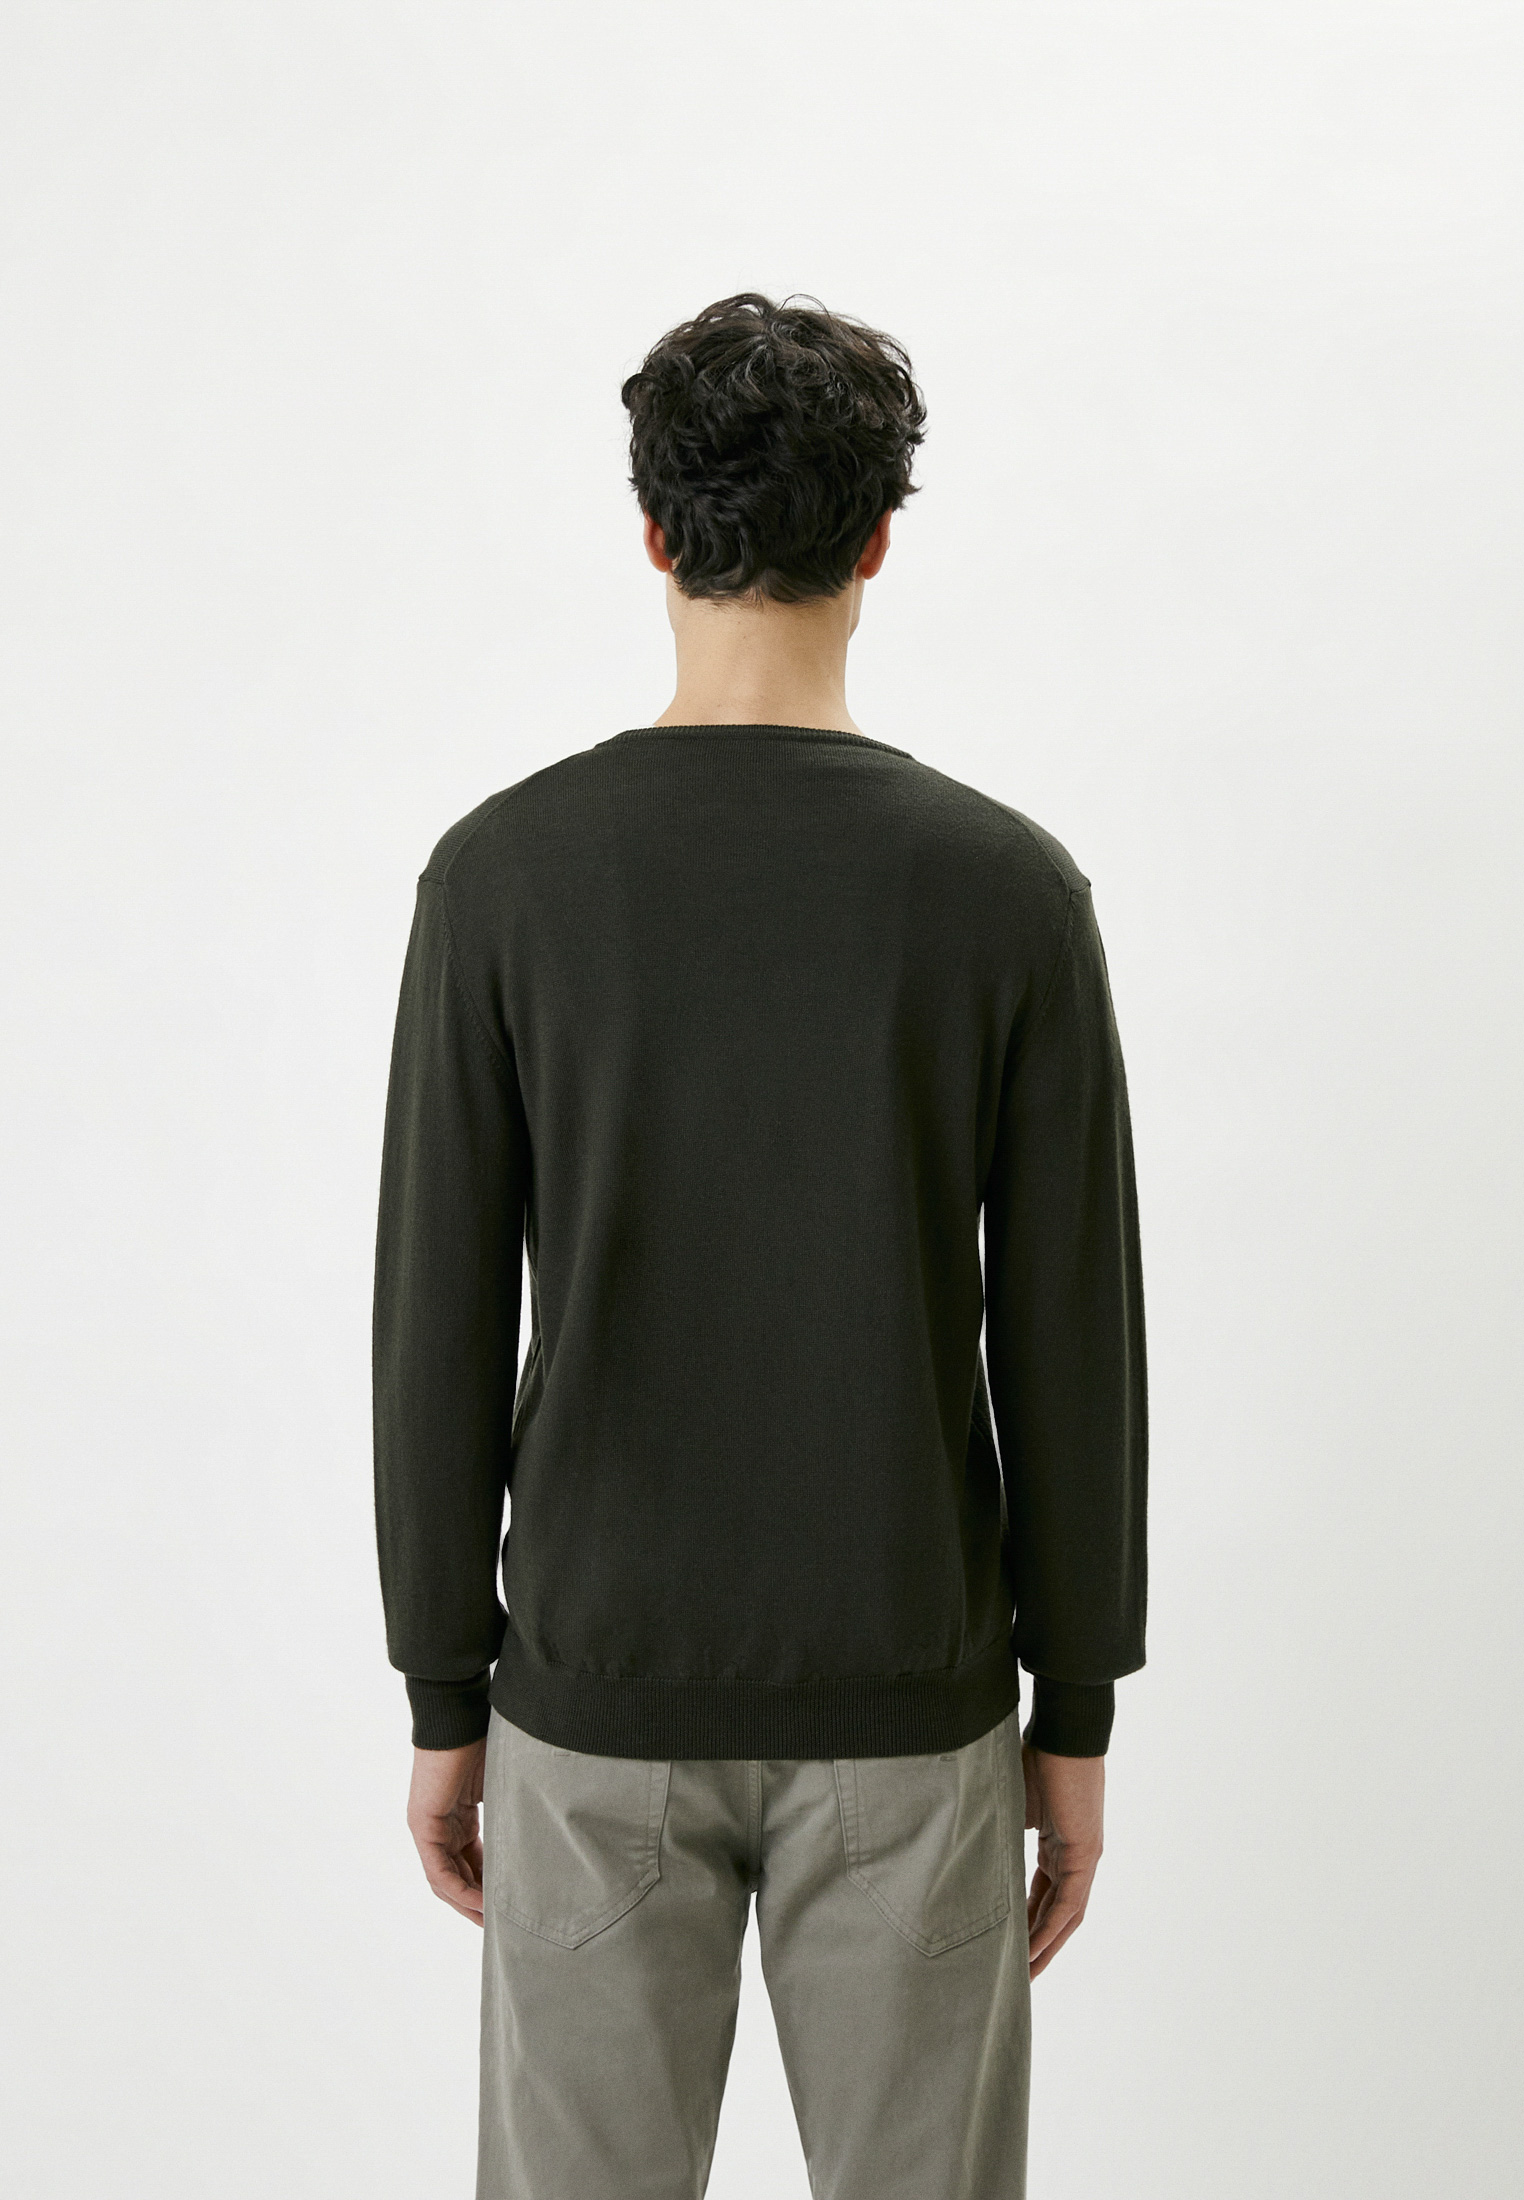 Пуловер Baldinini (Балдинини) MU02: изображение 3